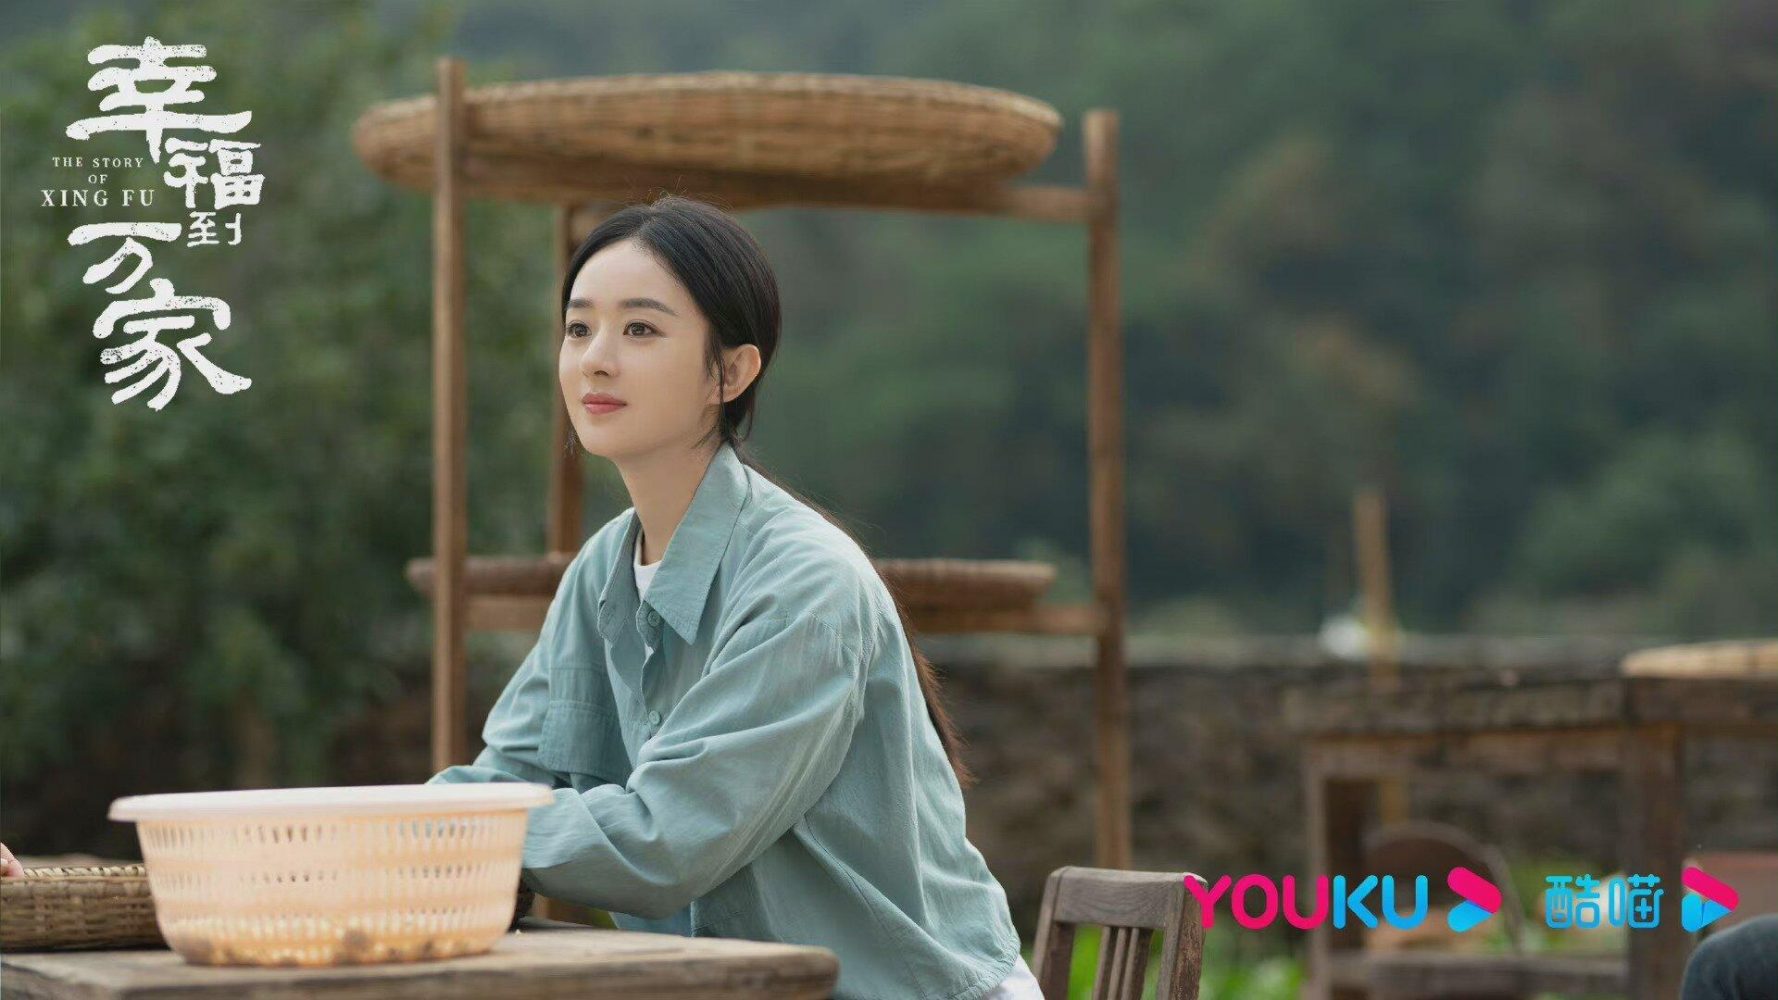 Phim mới nhất của Triệu Lệ Dĩnh: Hạnh Phúc cho tới Vạn Gia - The Story Of Xing Fu (2022)